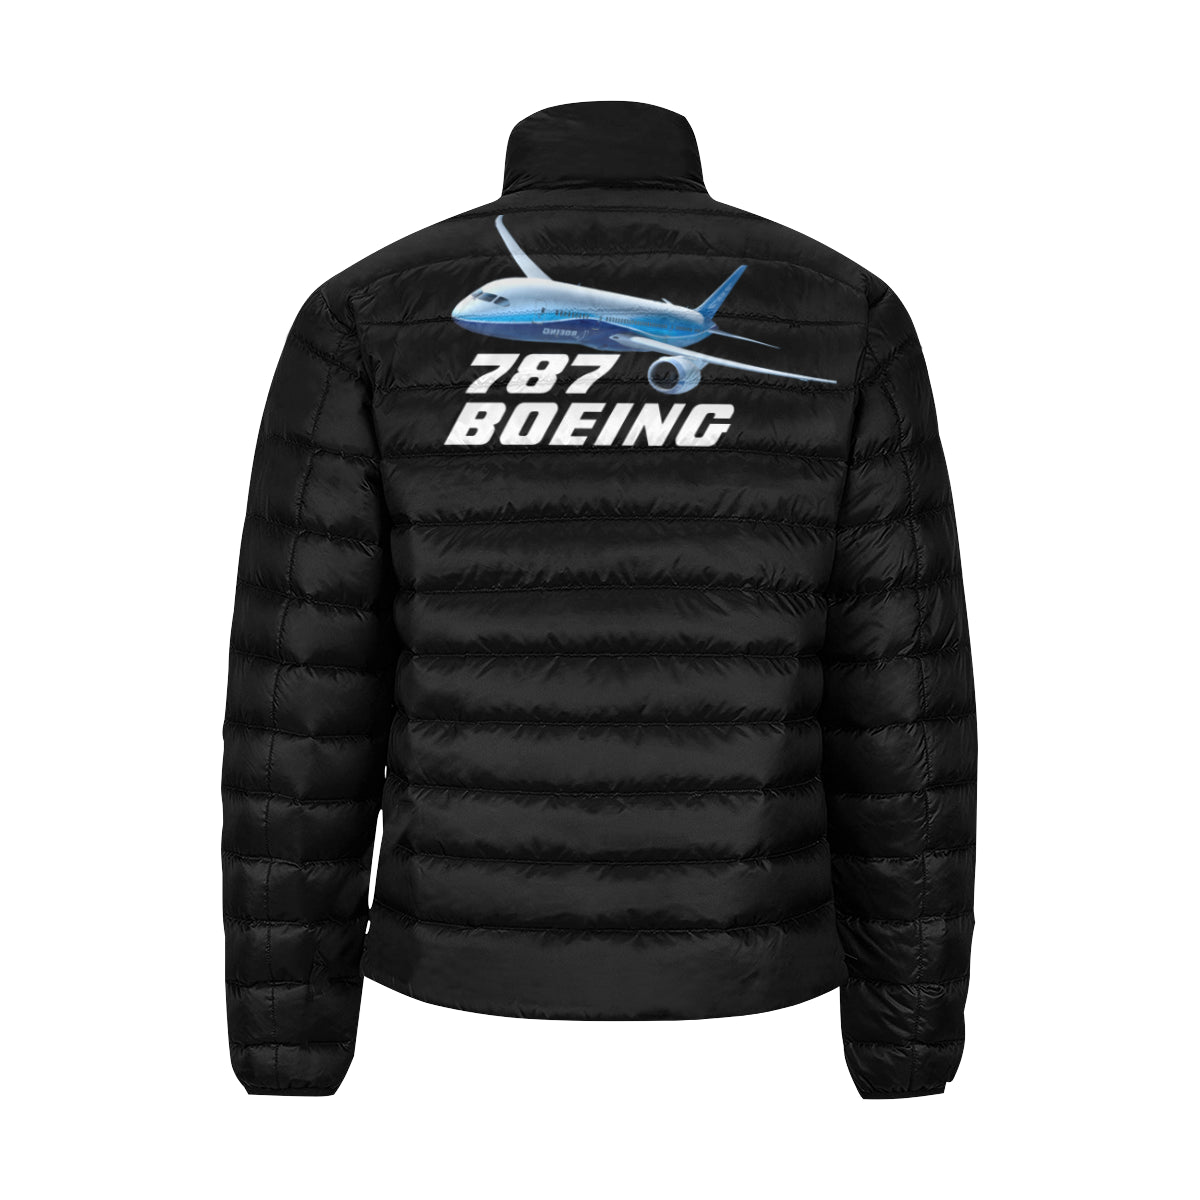 BOEING - 787 Men's Stand Collar Padded Jacket e-joyer